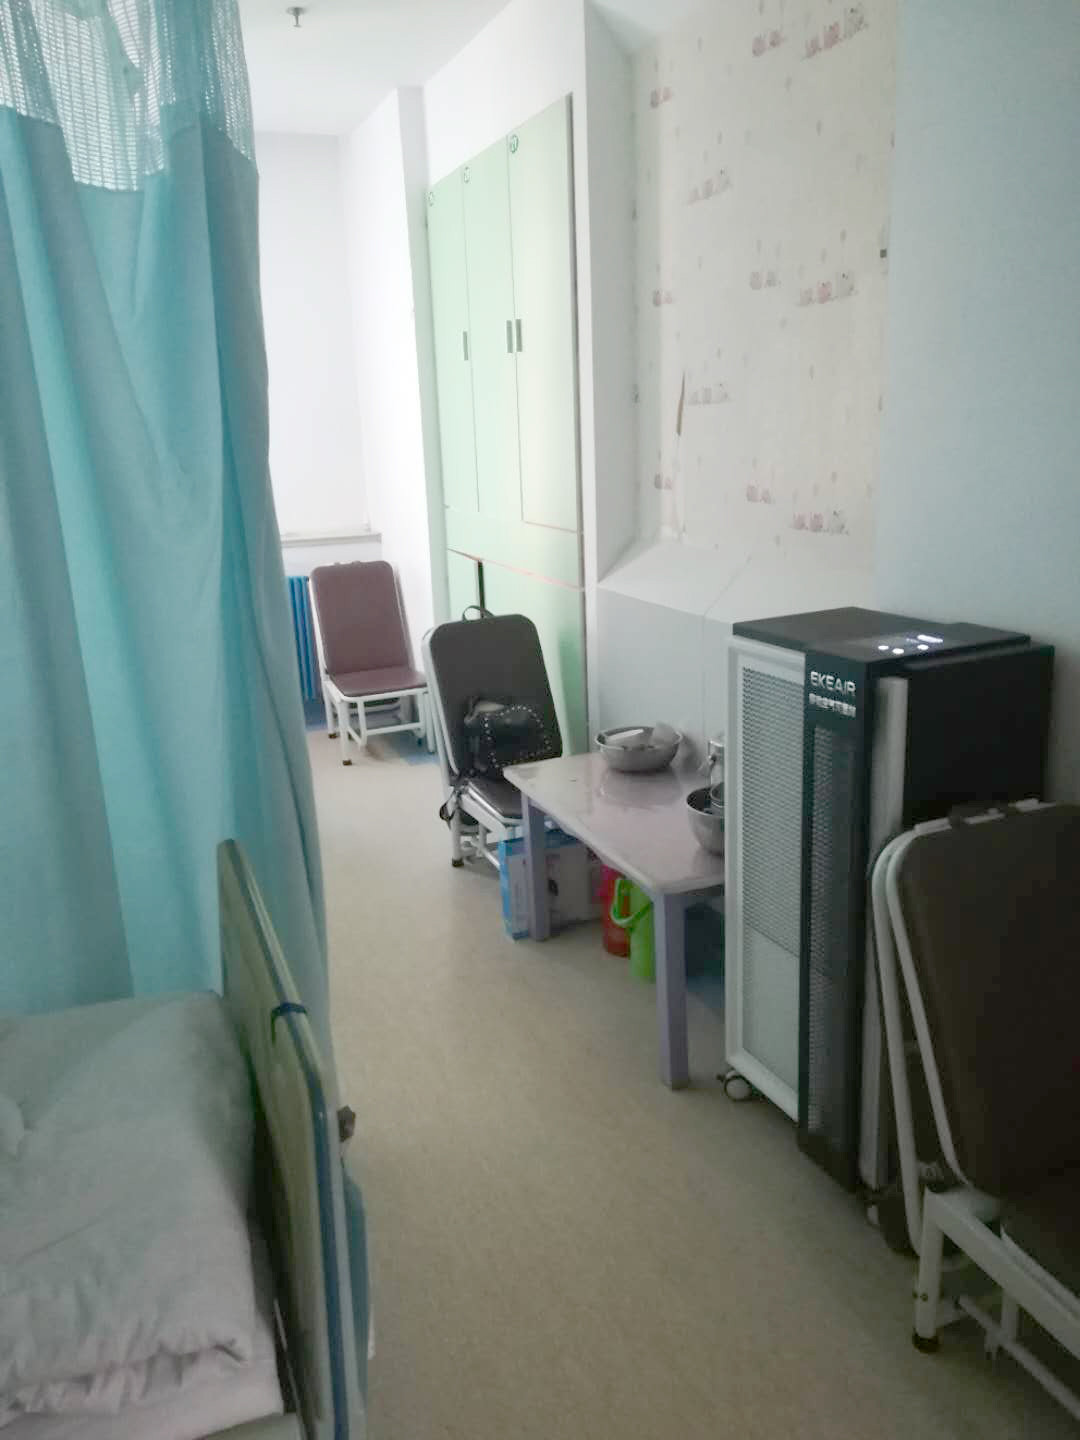 Dernière affaire concernant Hôpital de Shandong Provincal